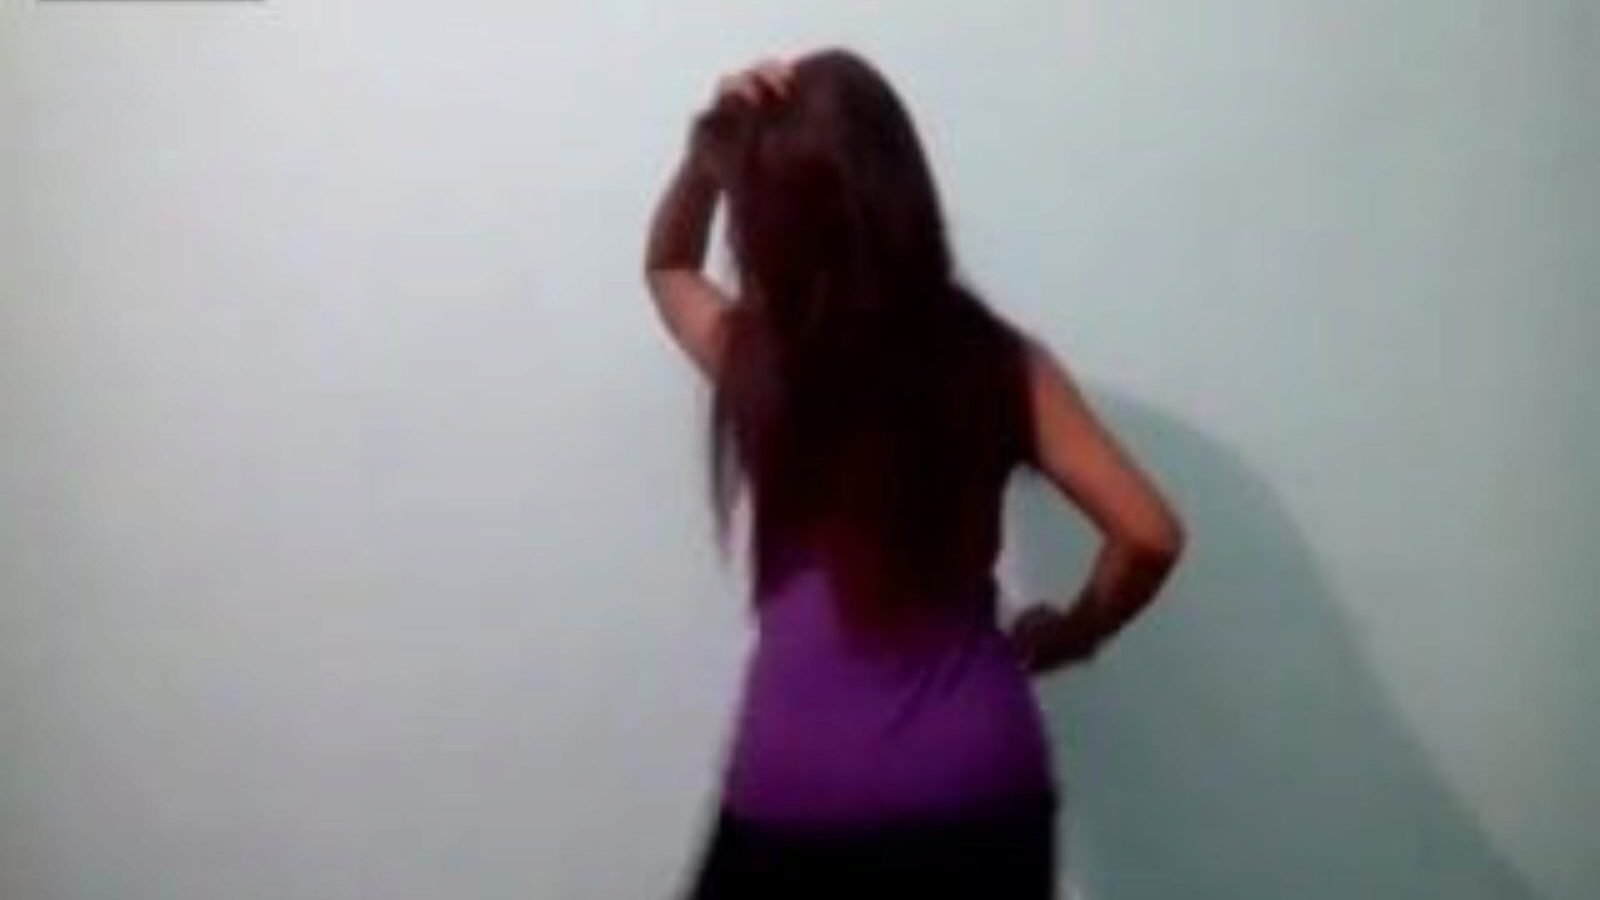 amant de telugu andhra danse nue, vidéo porno indienne gratuite a4 regarder la vidéo de danse nue andhra amant de telugu sur xhamster, le site de tube de baise-a-thon superlativement bon avec des tonnes de clips porno gratuit pour tous papa indien américain nu et malayalam